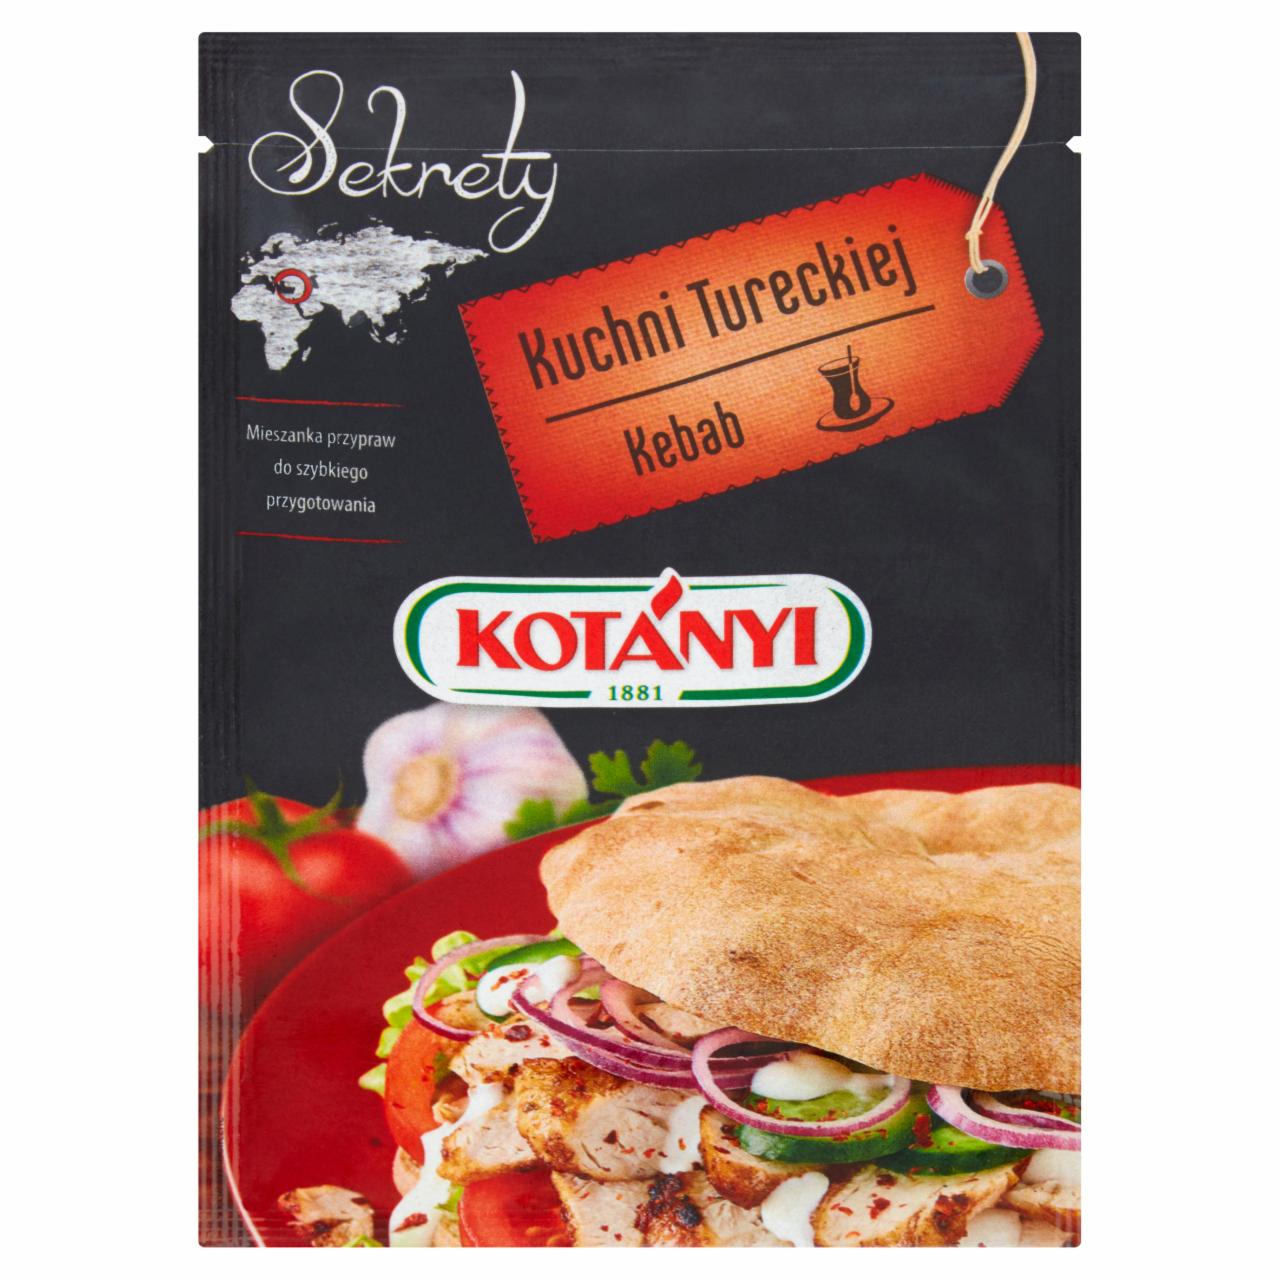 Zdjęcia - Kotányi Sekrety Kuchni Tureckiej Kebab Mieszanka przypraw 20 g